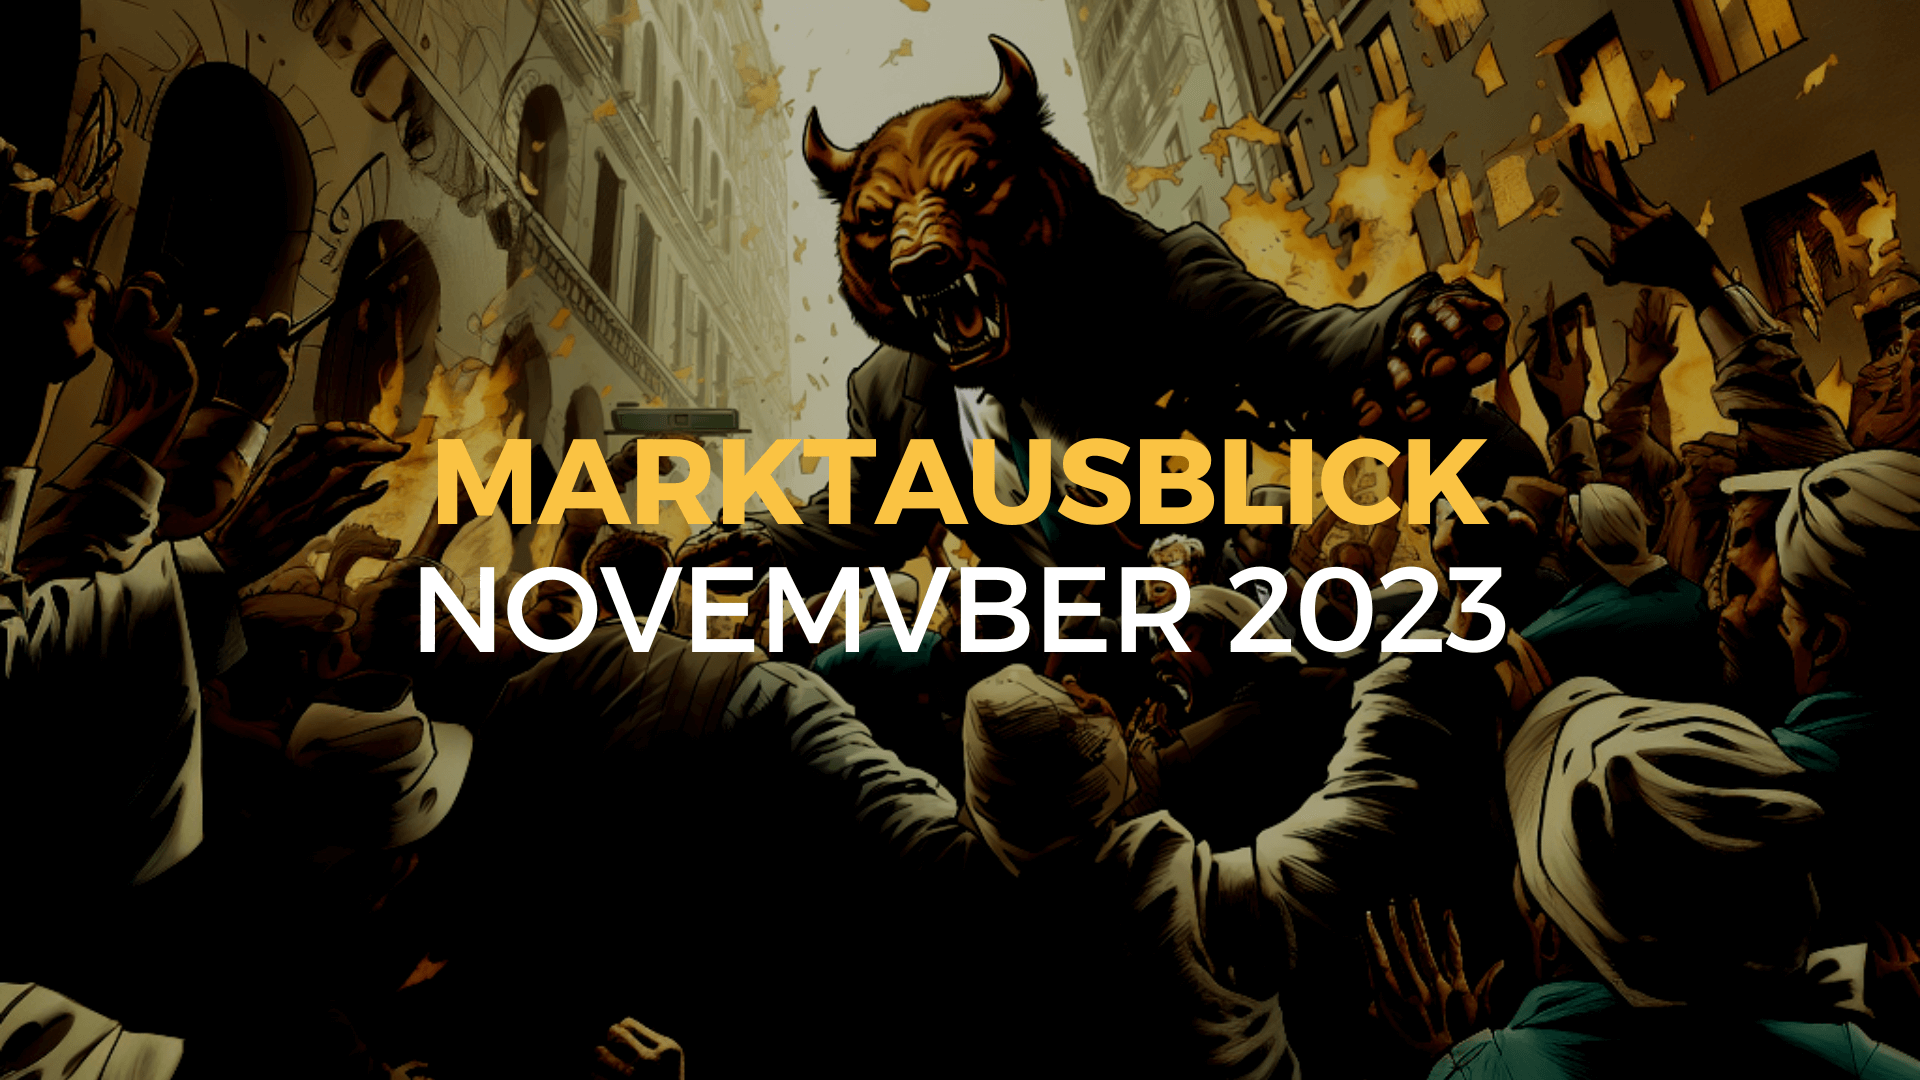 Marktausblick November 2023 - ALLES oder NICHTS.